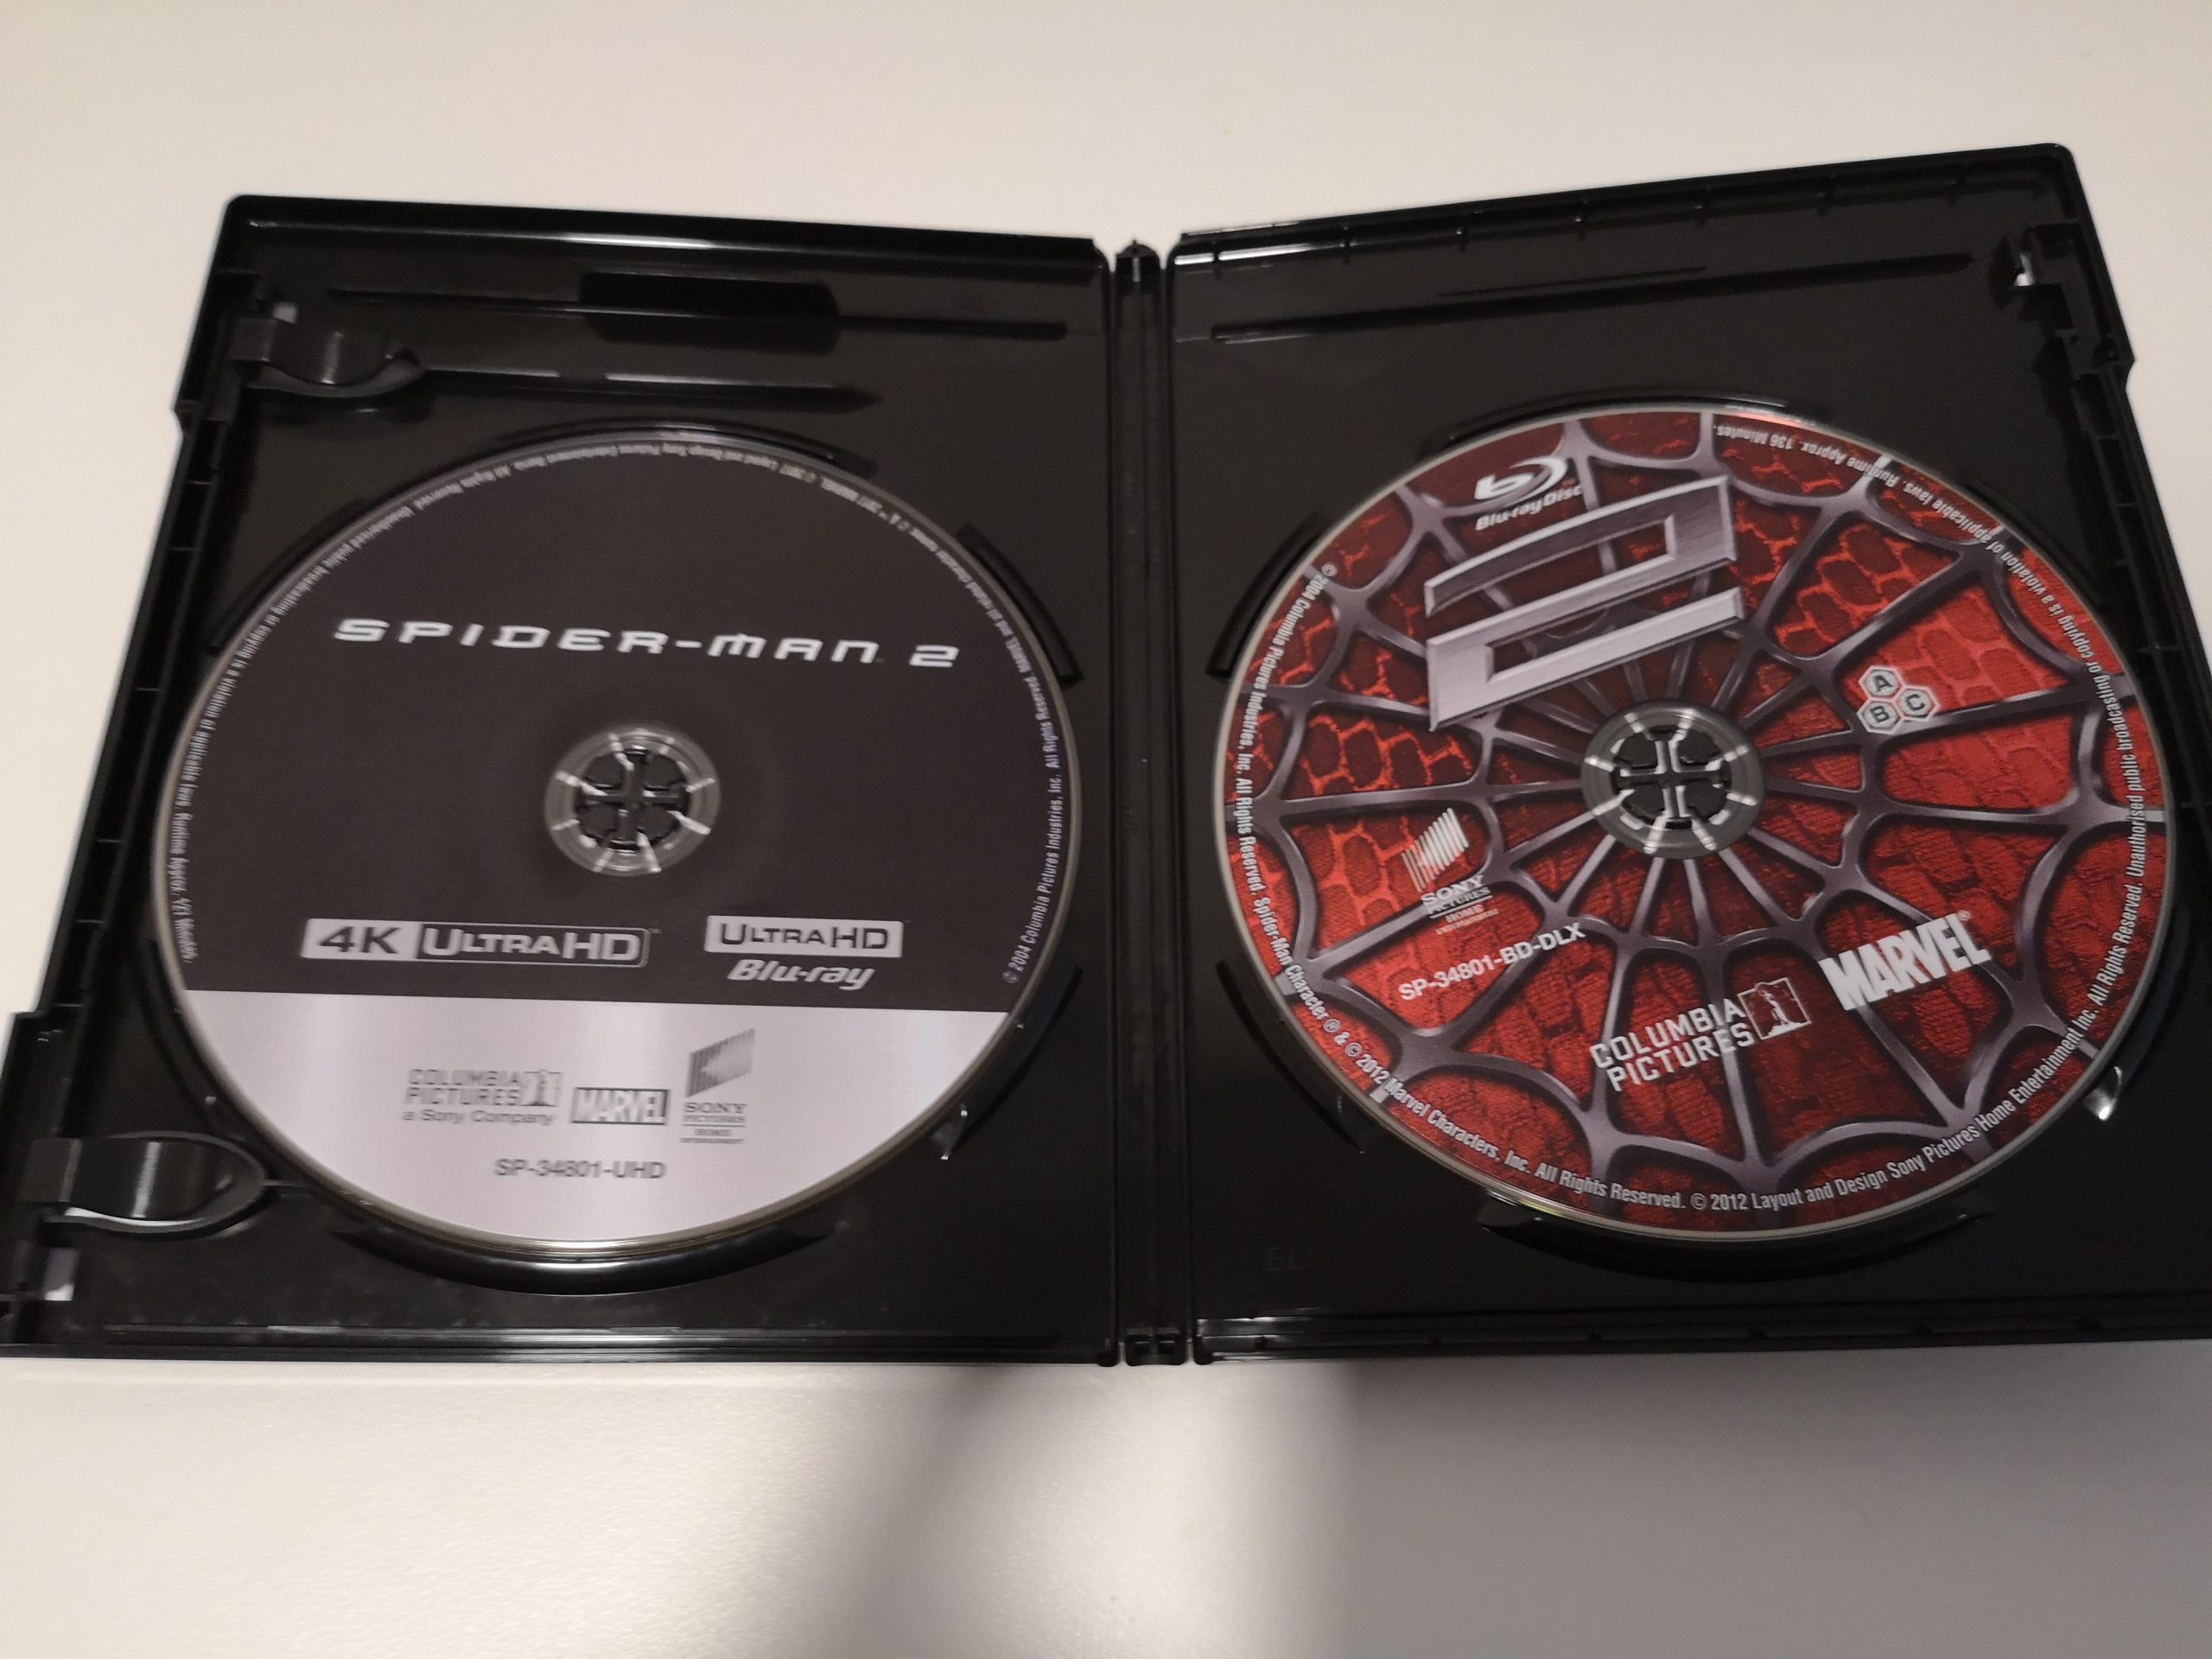 Spider-Man 2 discos 02